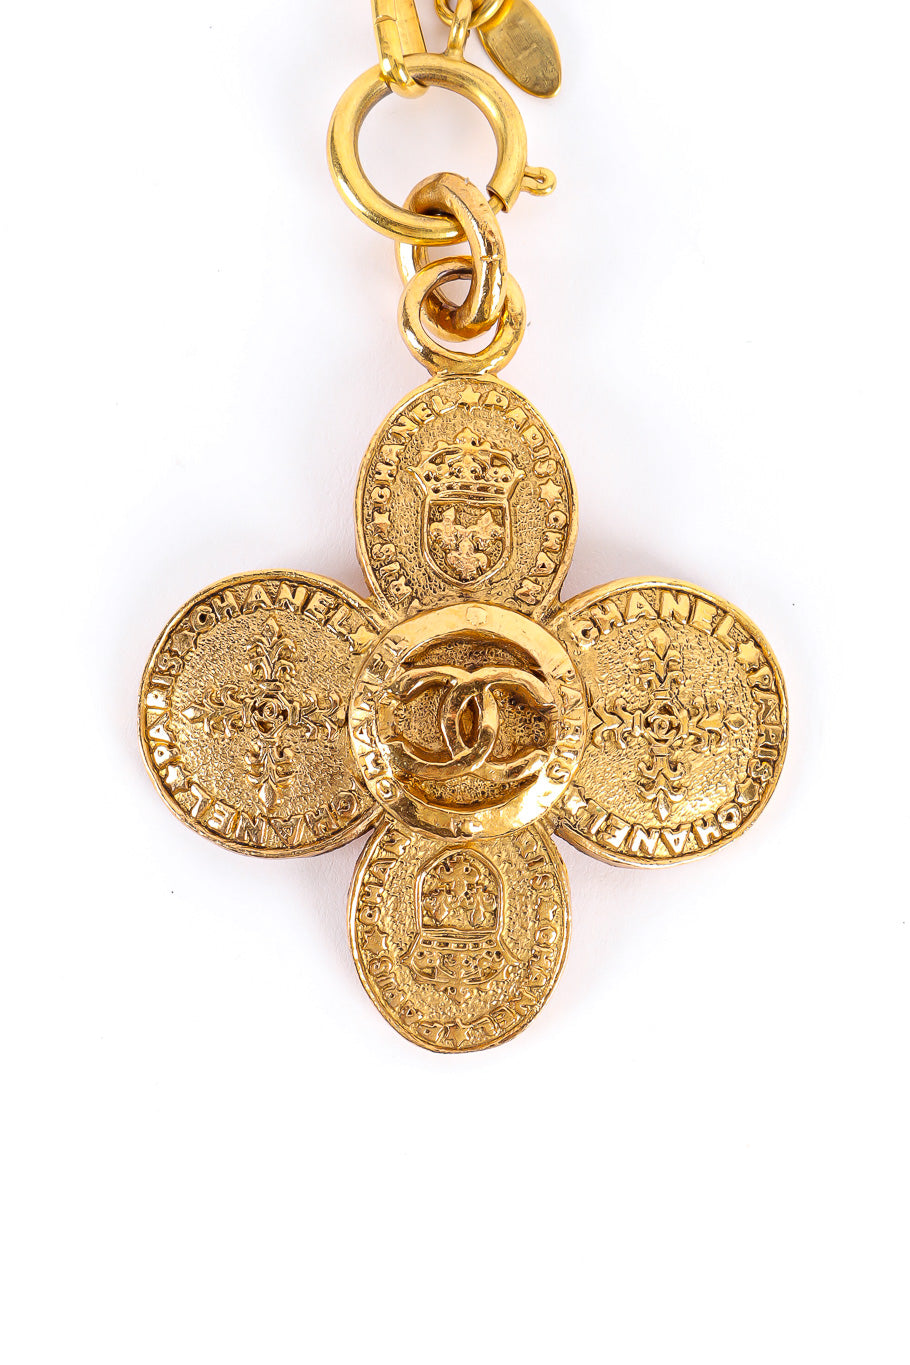 Clover Crest Cross Pendant Necklace by Chanel pendant closeup @recessla